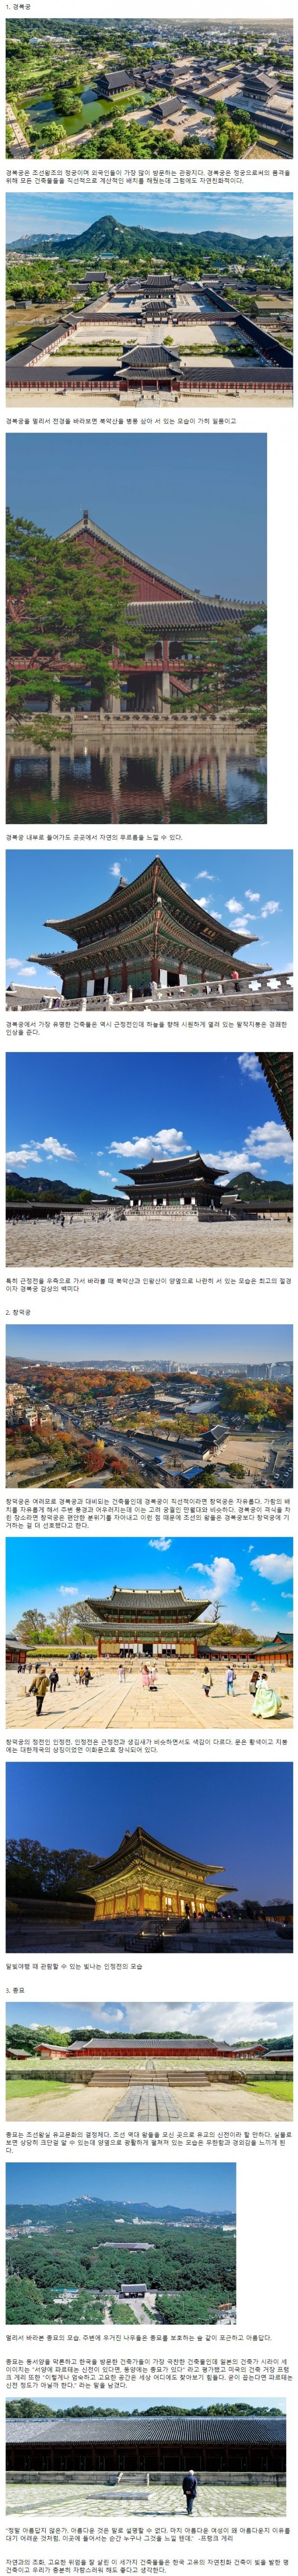 한국 특유의 건축미가 돋보이는 궁궐건축들